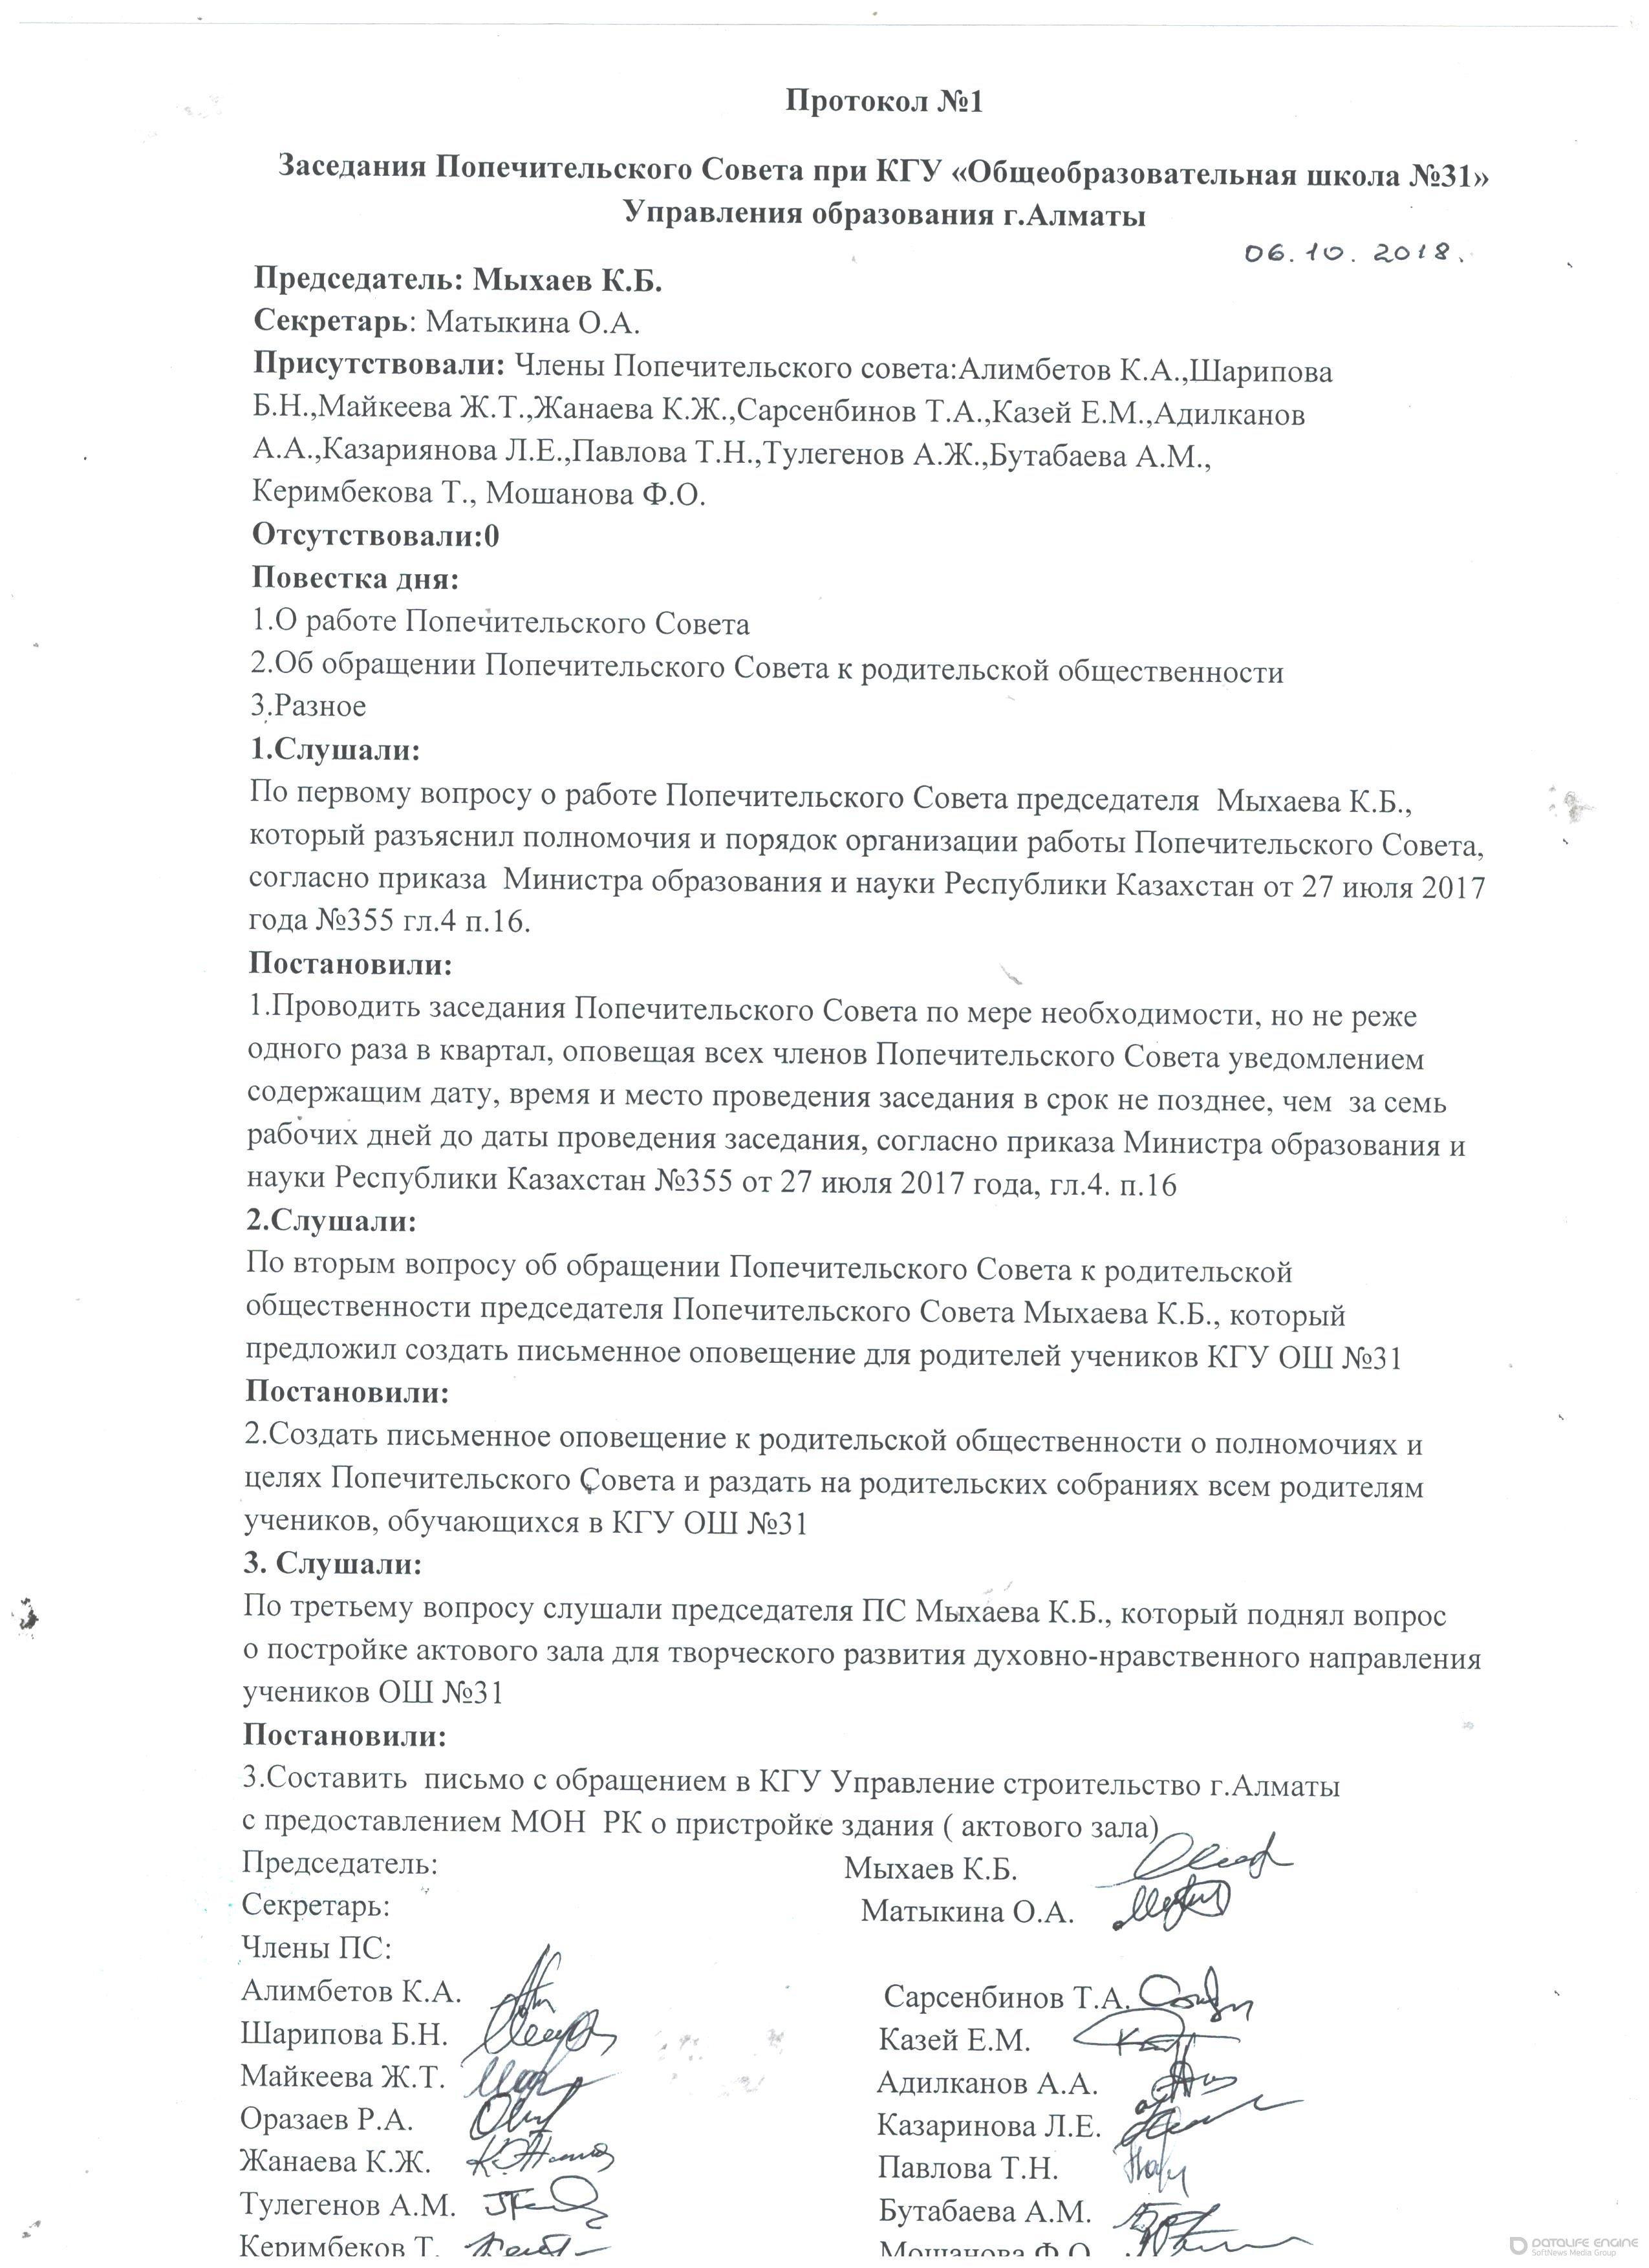 Протокол № 1 заседания попечительского совета при КГУ ОШ №31